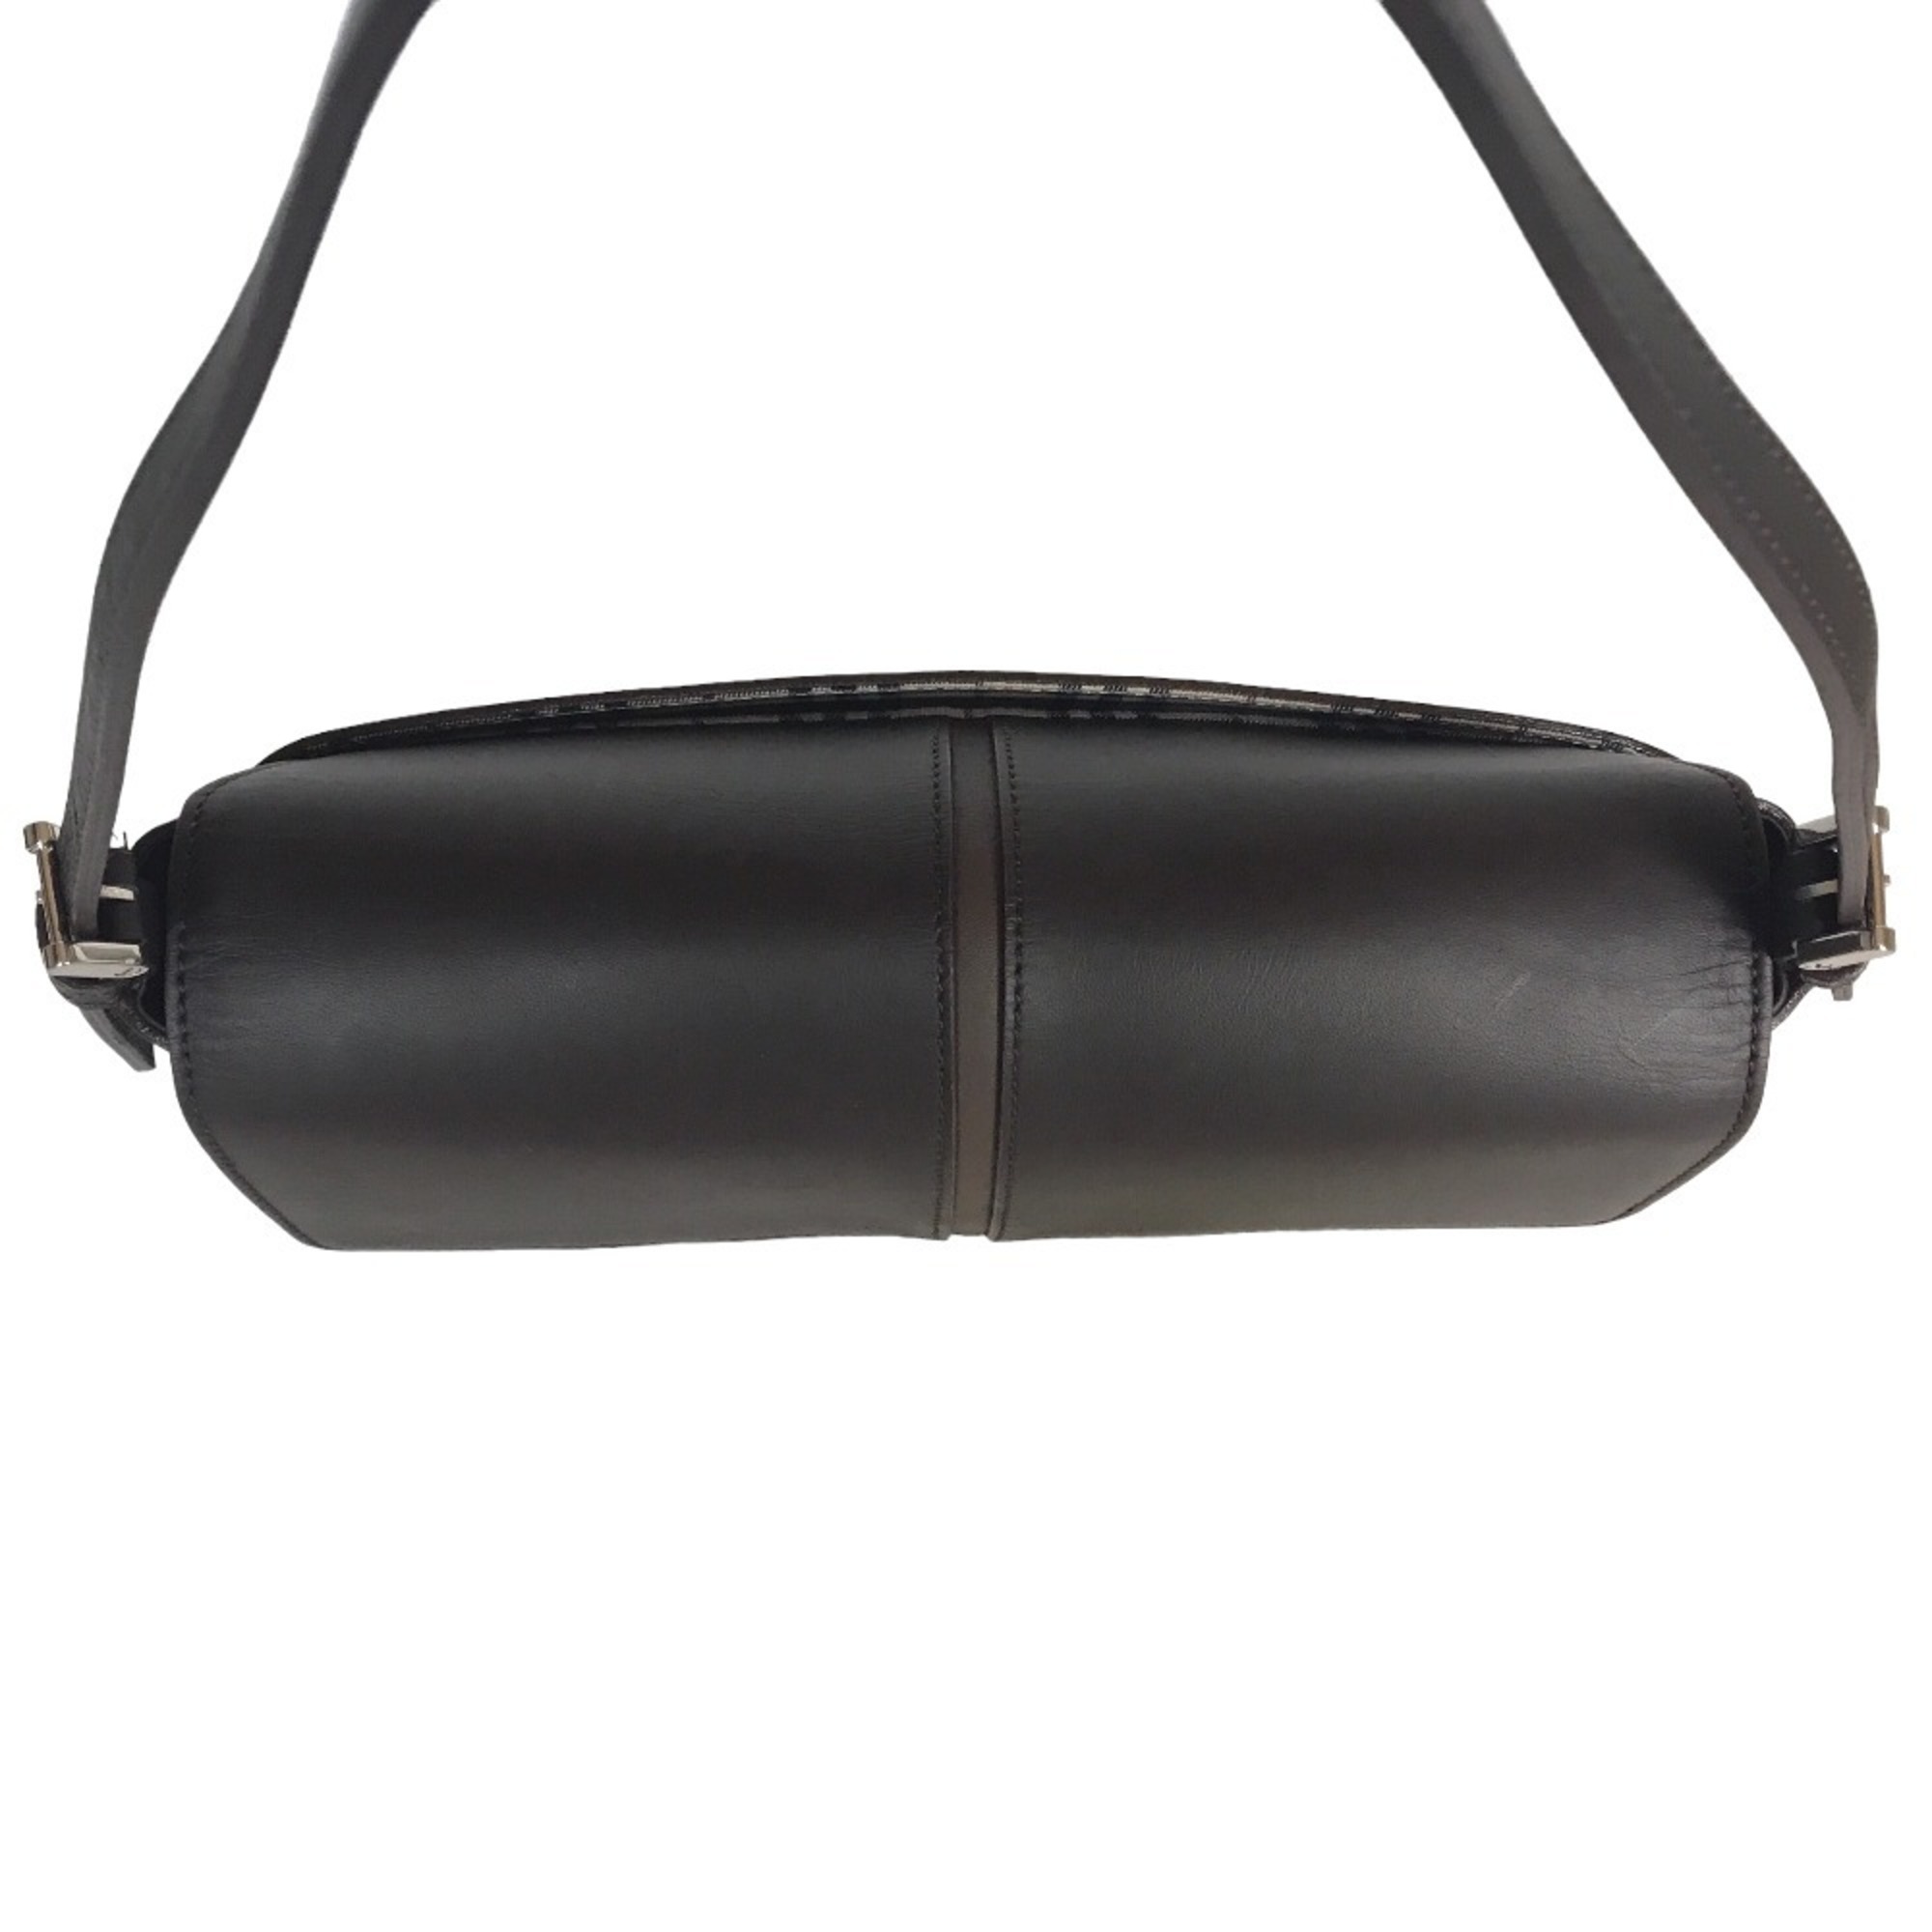 BURBERRY Nova Check Sling Bag Handbag Women's Leather Brown